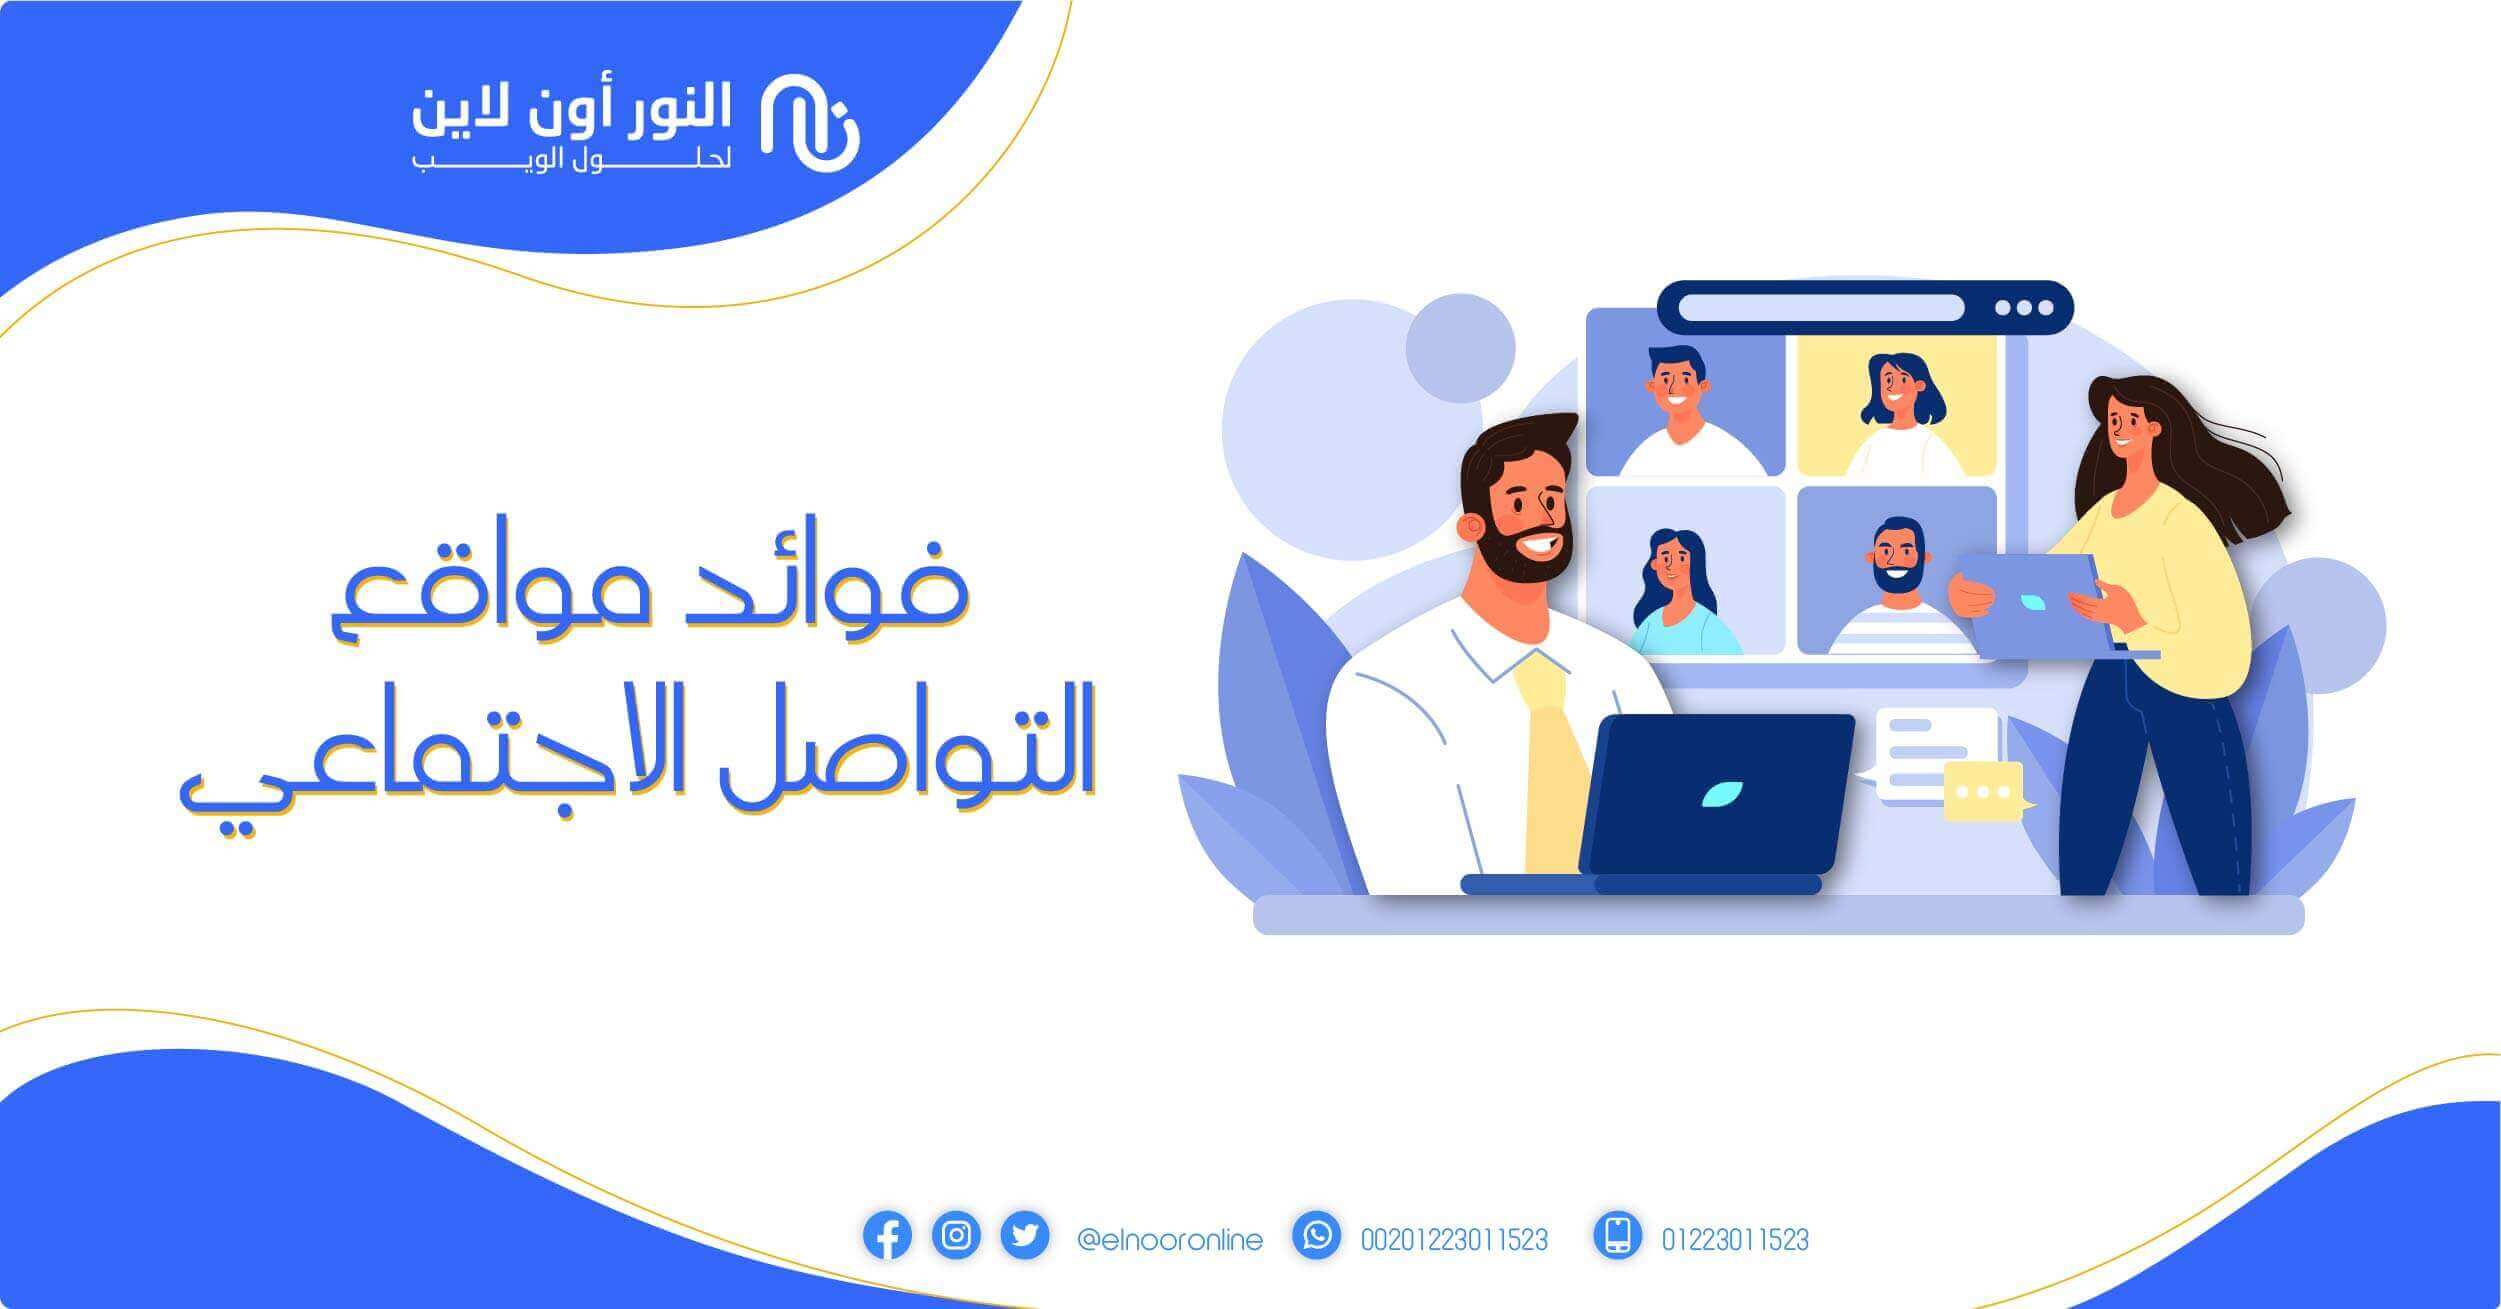 ما هي أفضل الطرق للتواصل والتعارف عبر الإنترنت في الخليج - فوائد التواصل عبر مواقع التواصل الاجتماعي